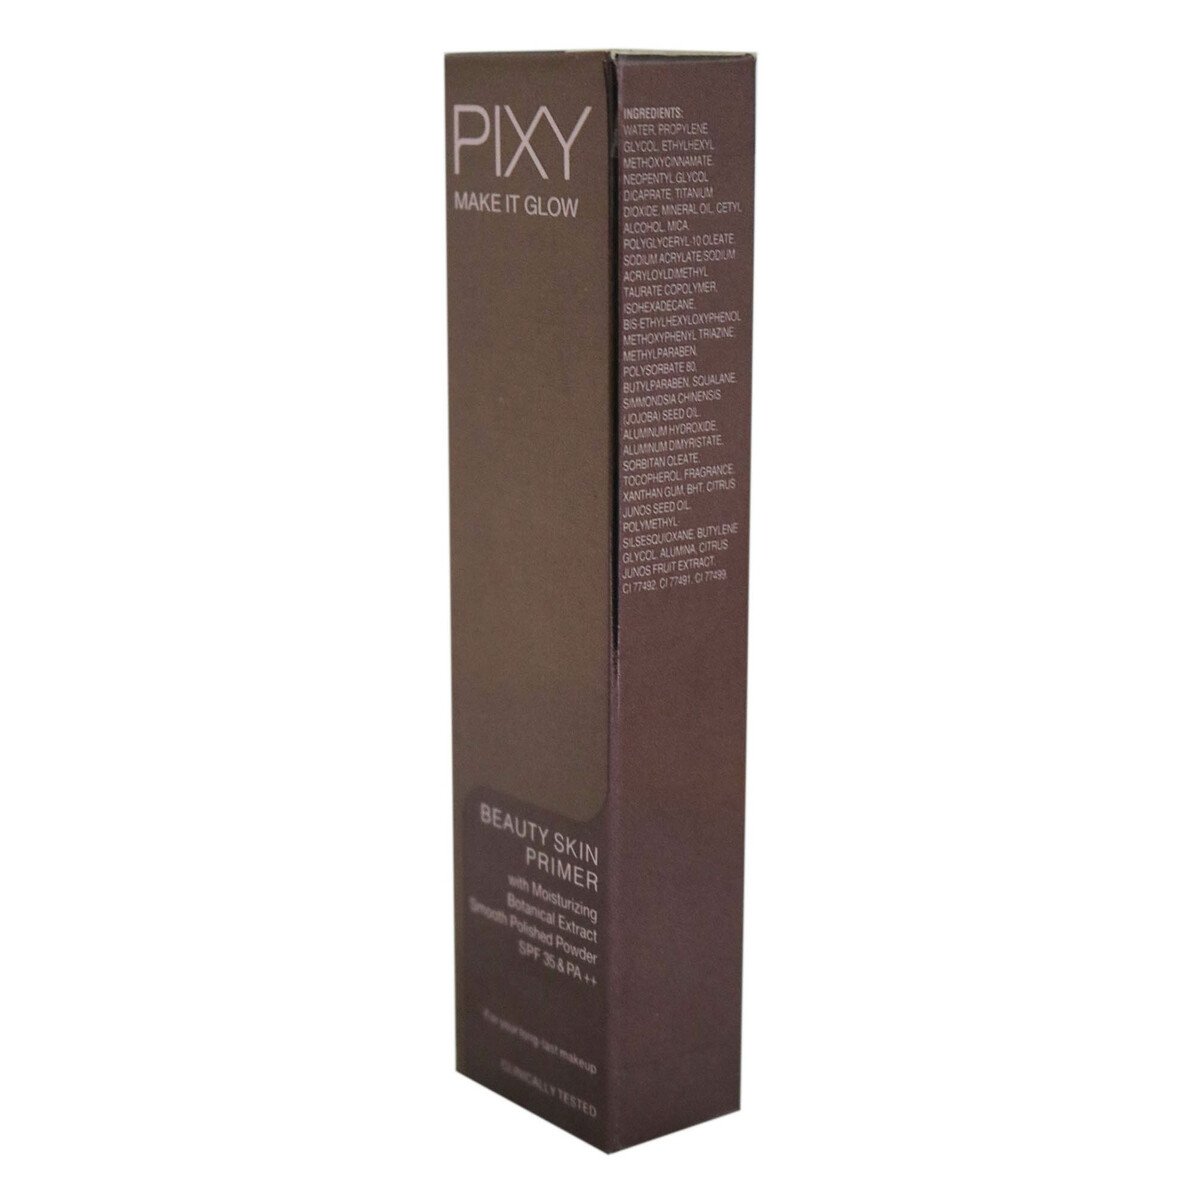 Pixy Make It Glow Beauty Skin Primer 101 Beige 10g